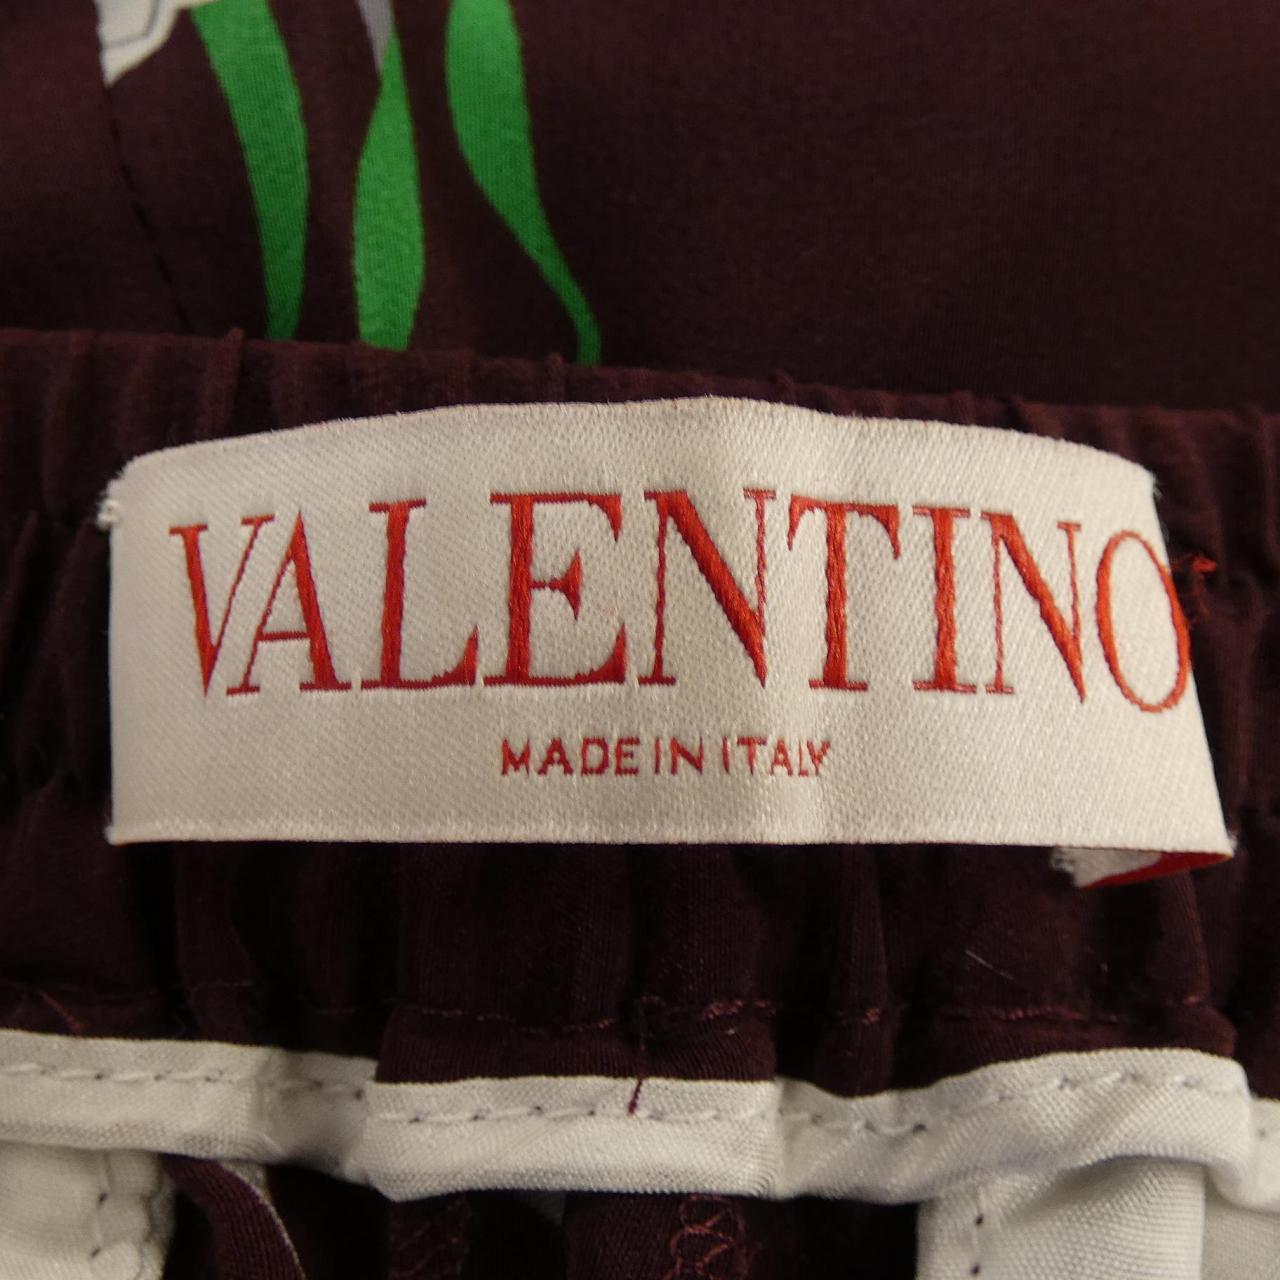 ヴァレンティノ VALENTINO パンツ